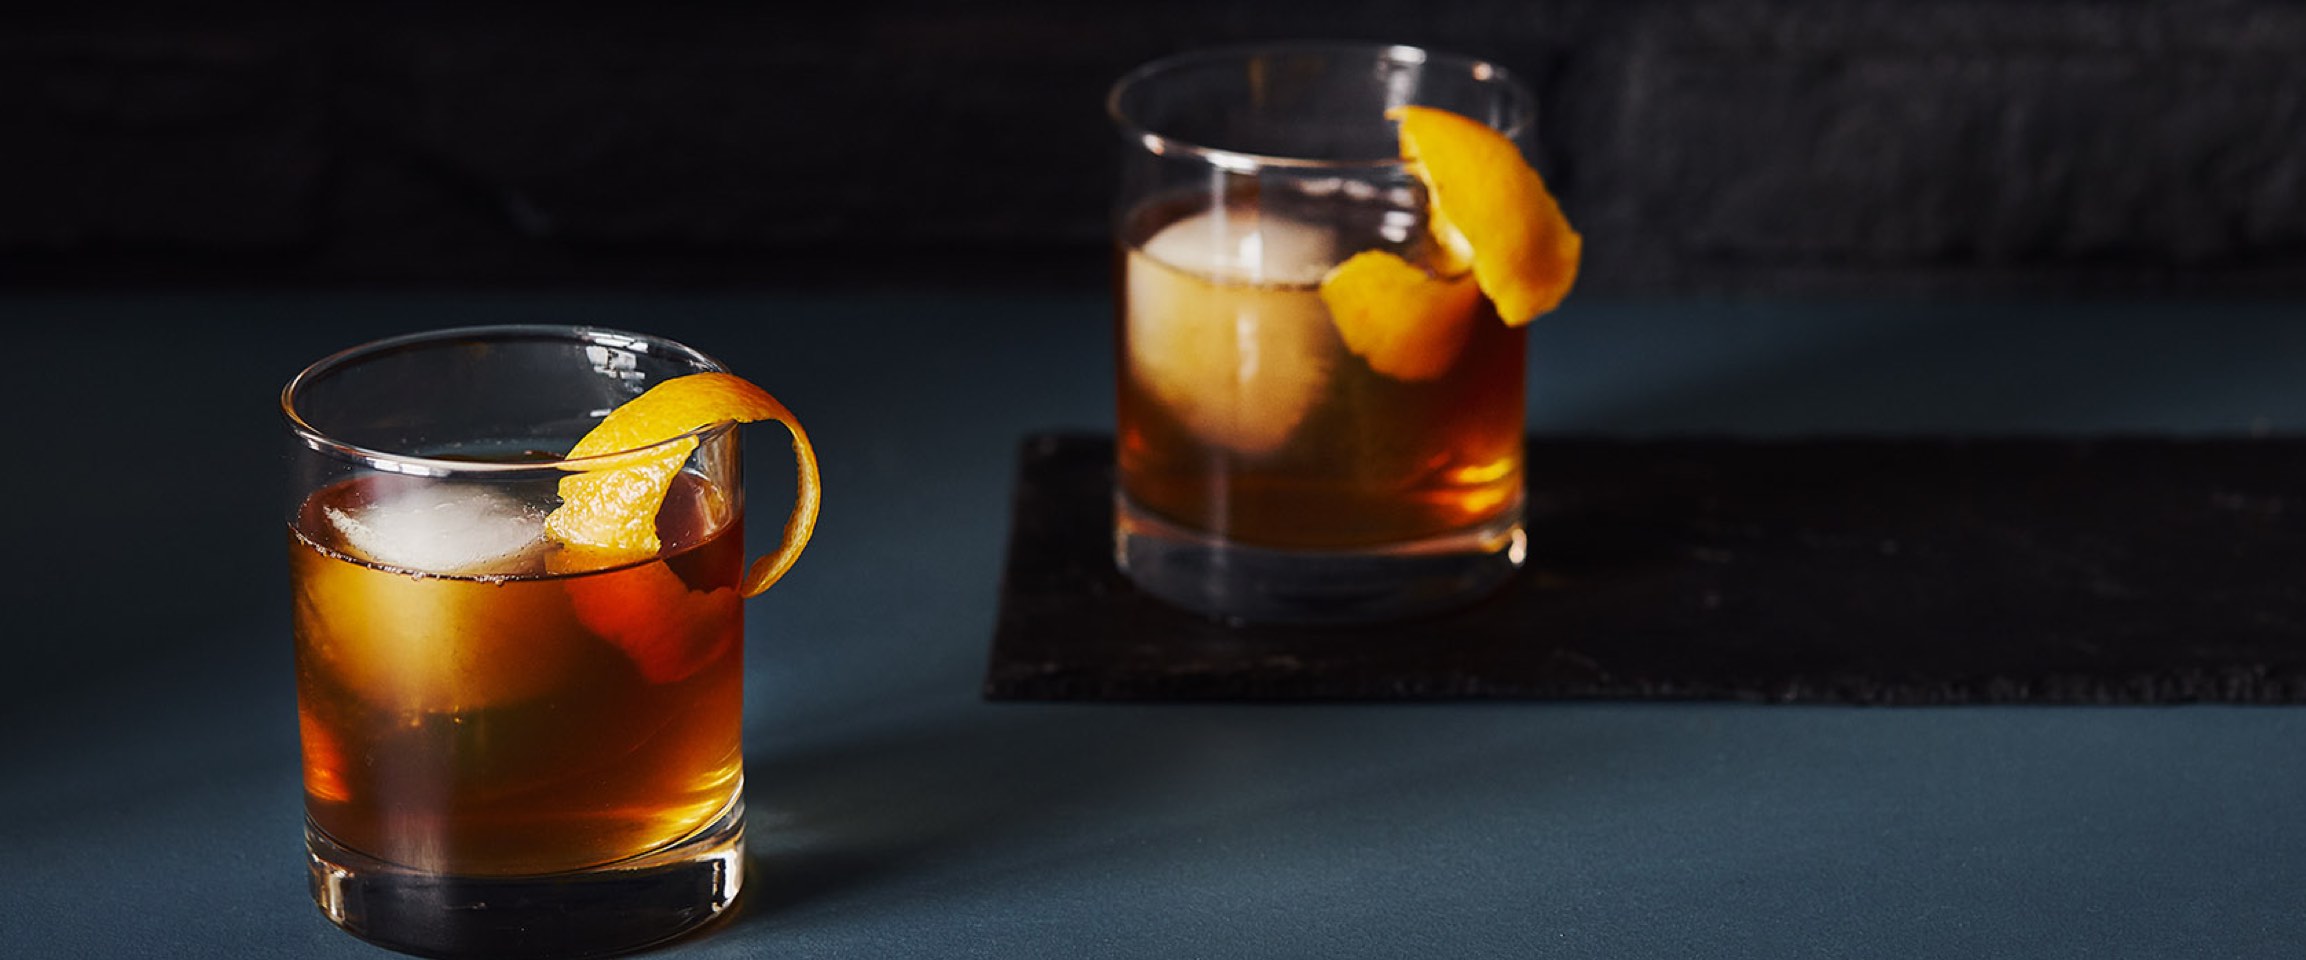 2 verres transparents contenant un cocktail Manhattan, de la glace et un zeste d’orange.